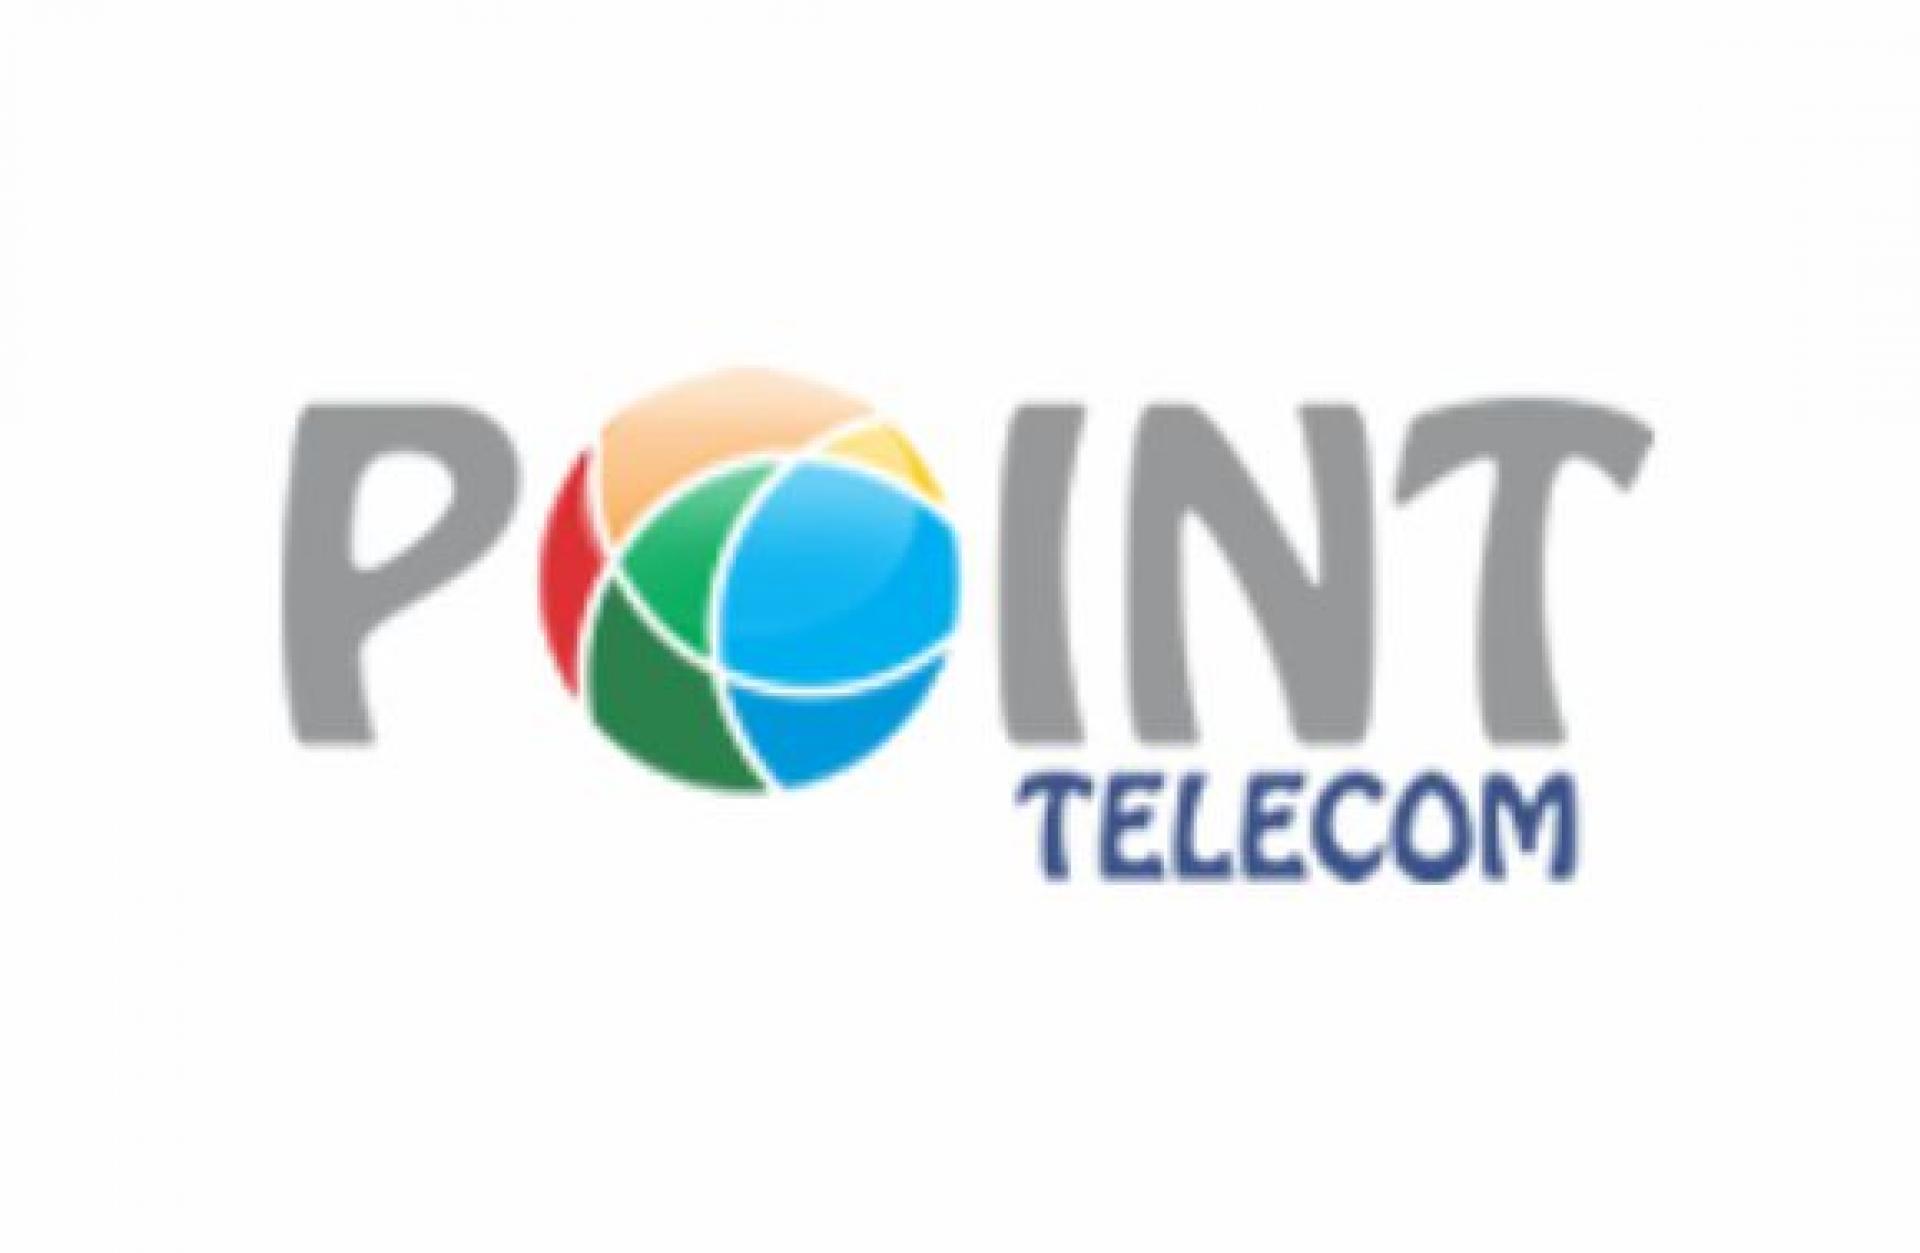 Point Telecom